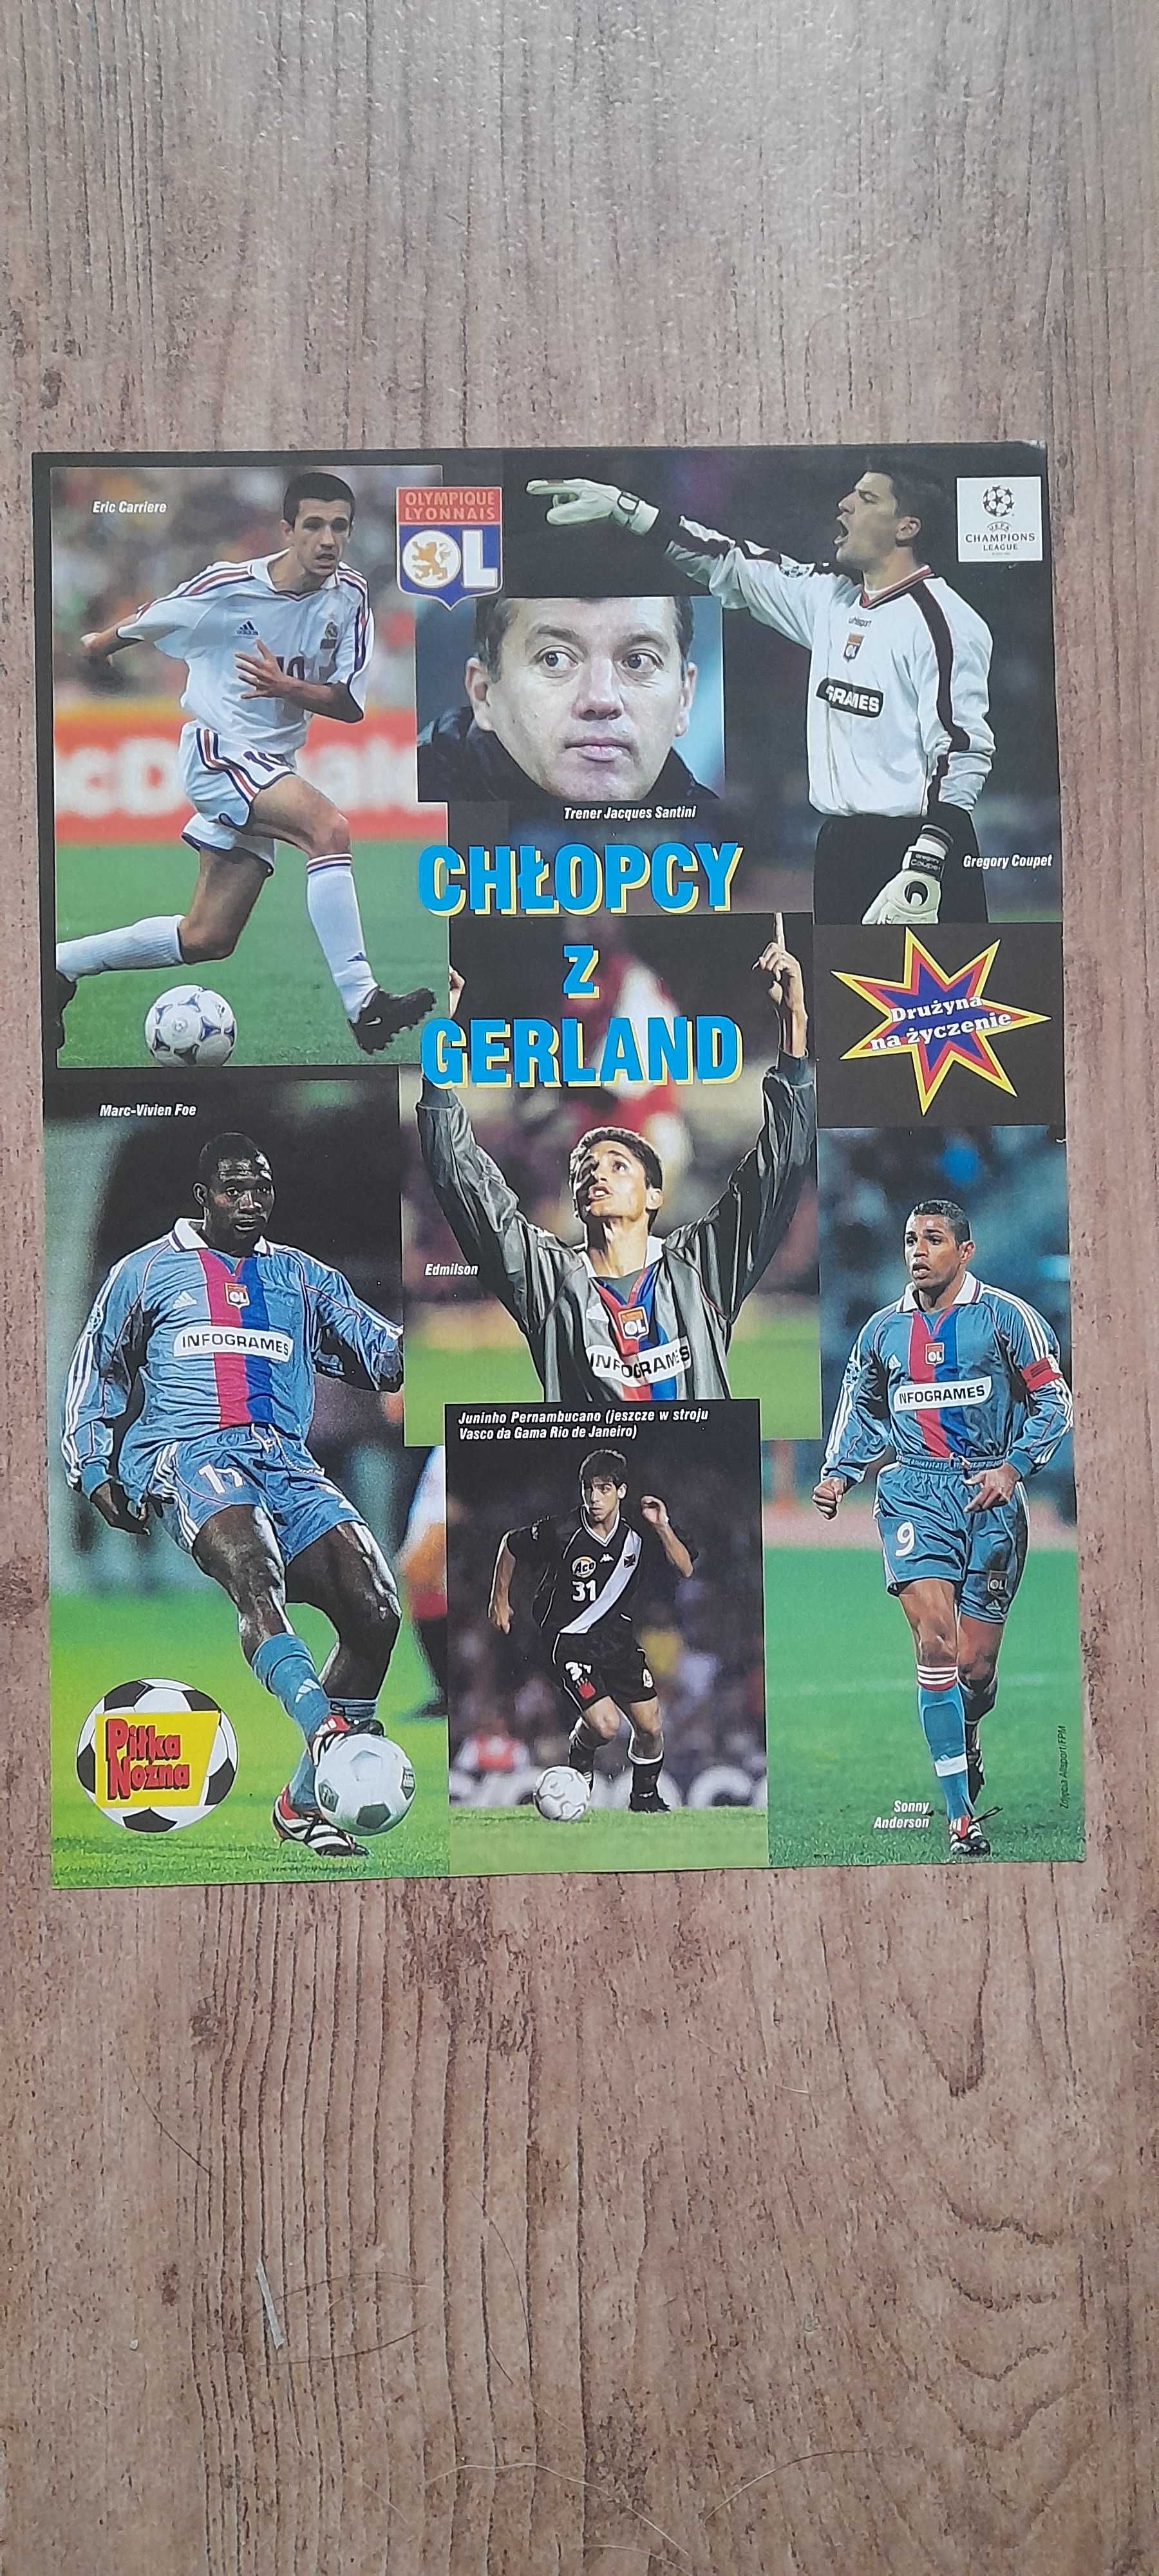 Olimpique Lyon - plakat z gazety "Piłka Nożna", 2001 rok